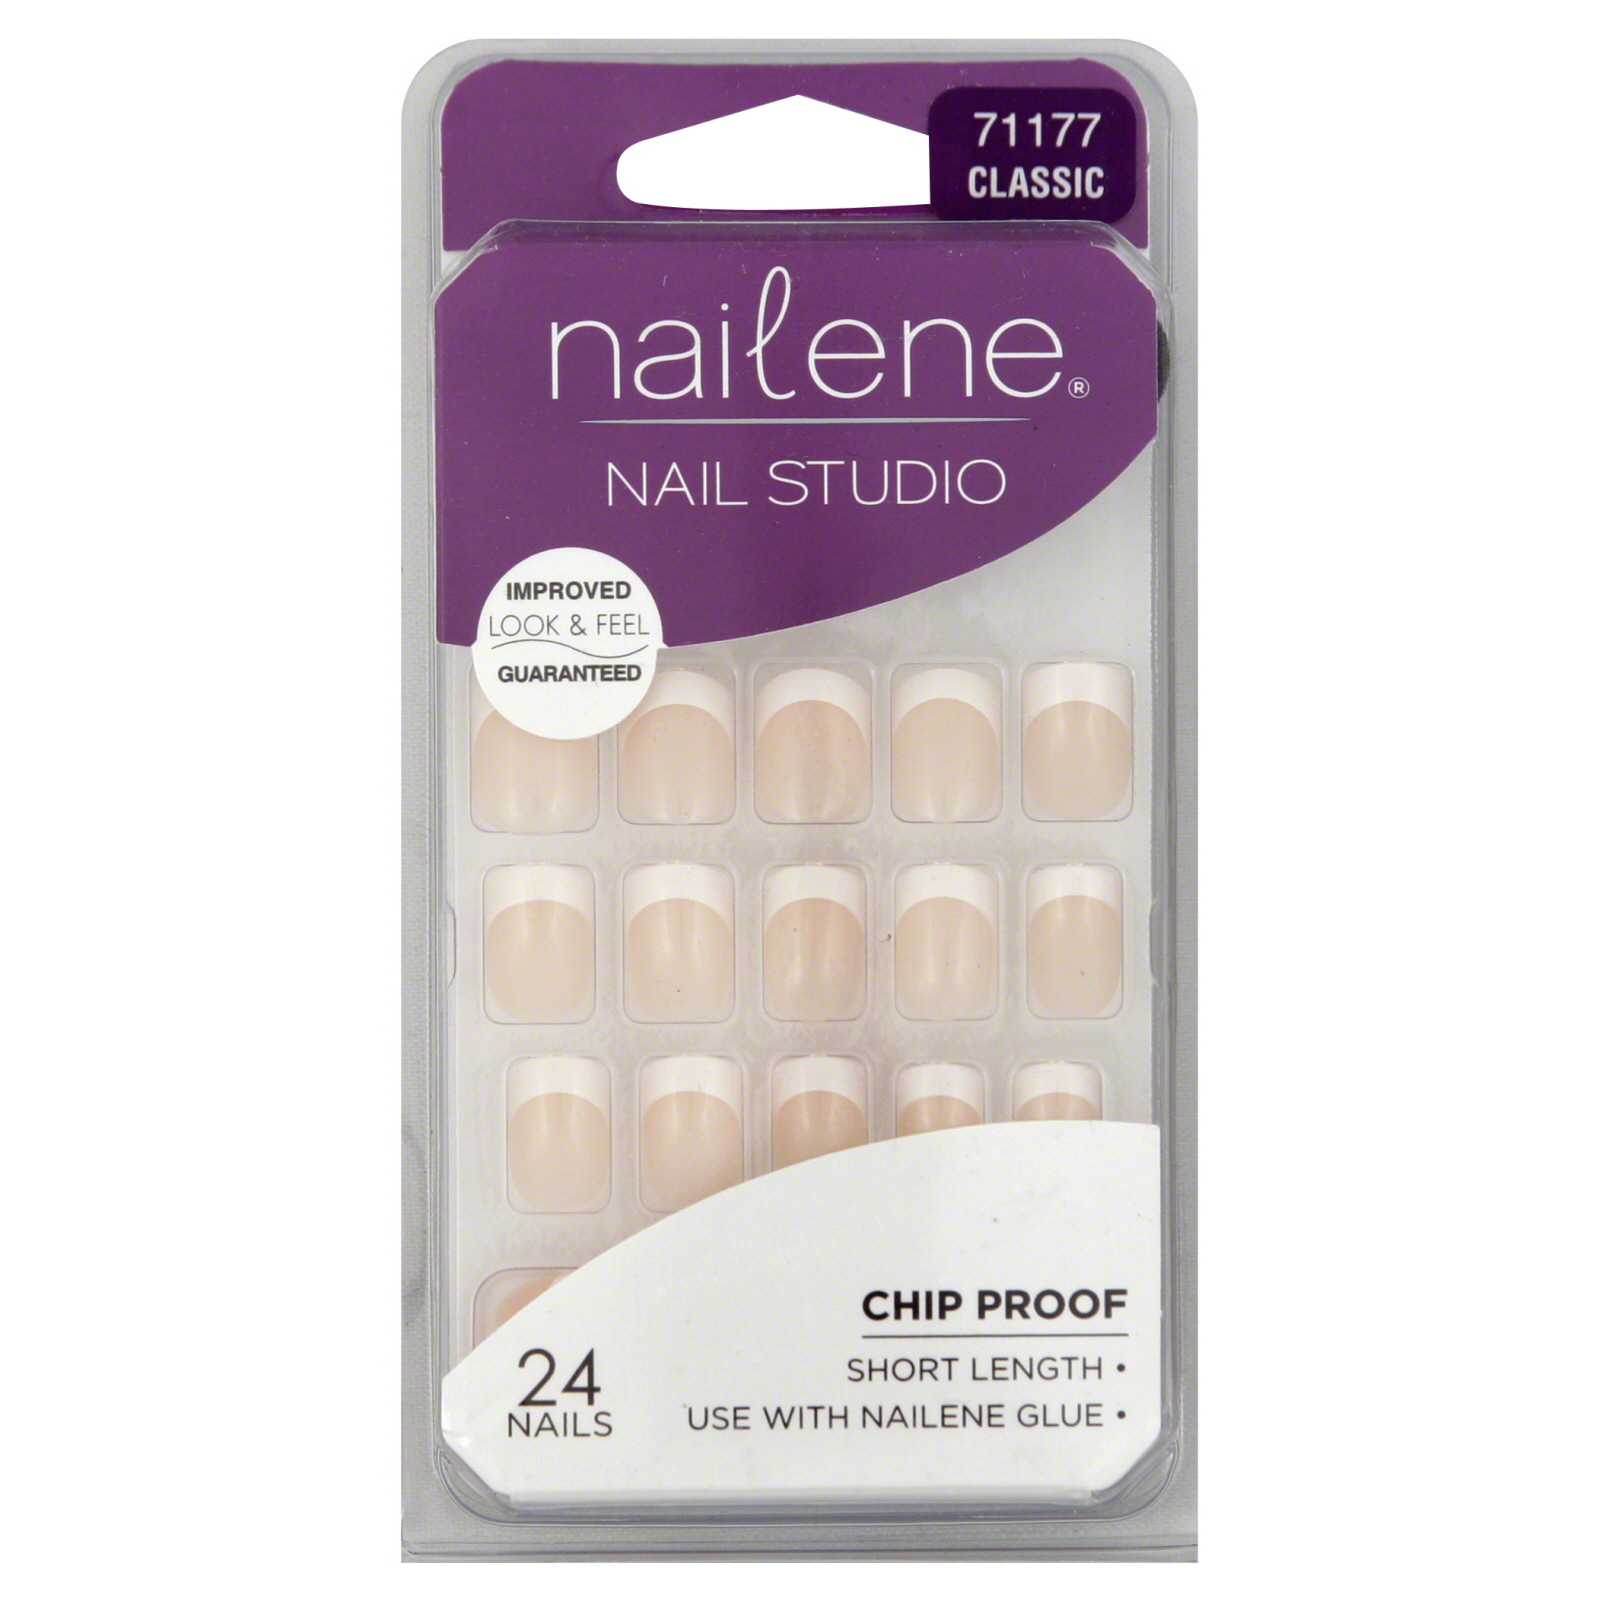 Nail Studio Nails, Short Length, Classic 71177, 24 nails